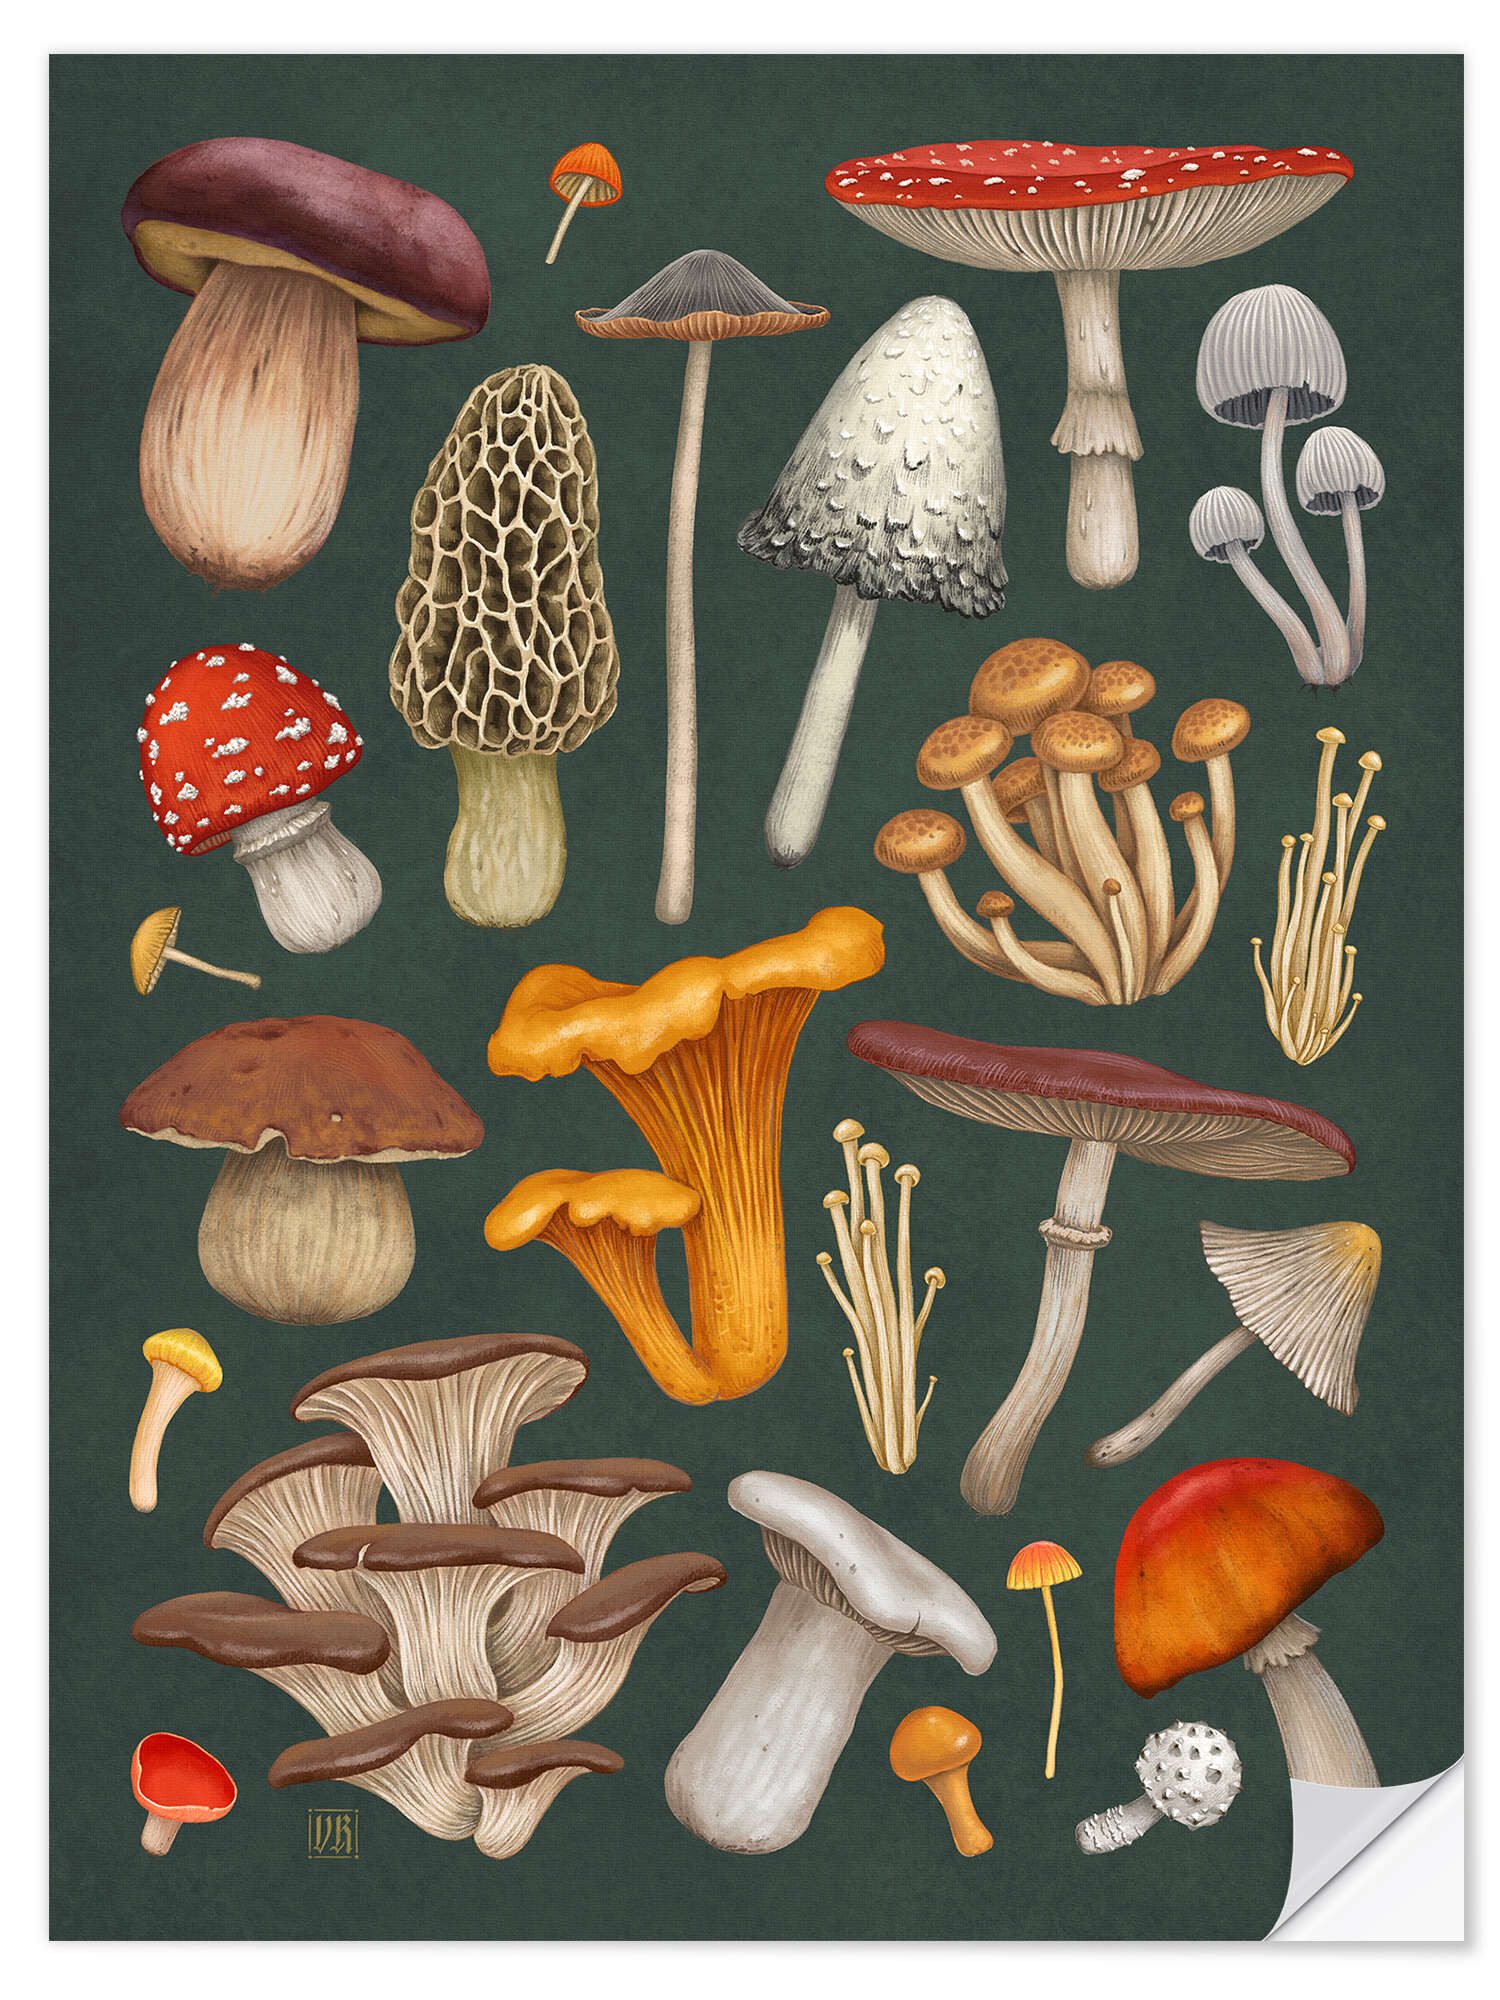 Posterlounge Wandfolie Vasilisa Romanenko, Pilze, Wohnzimmer Natürlichkeit Illustration